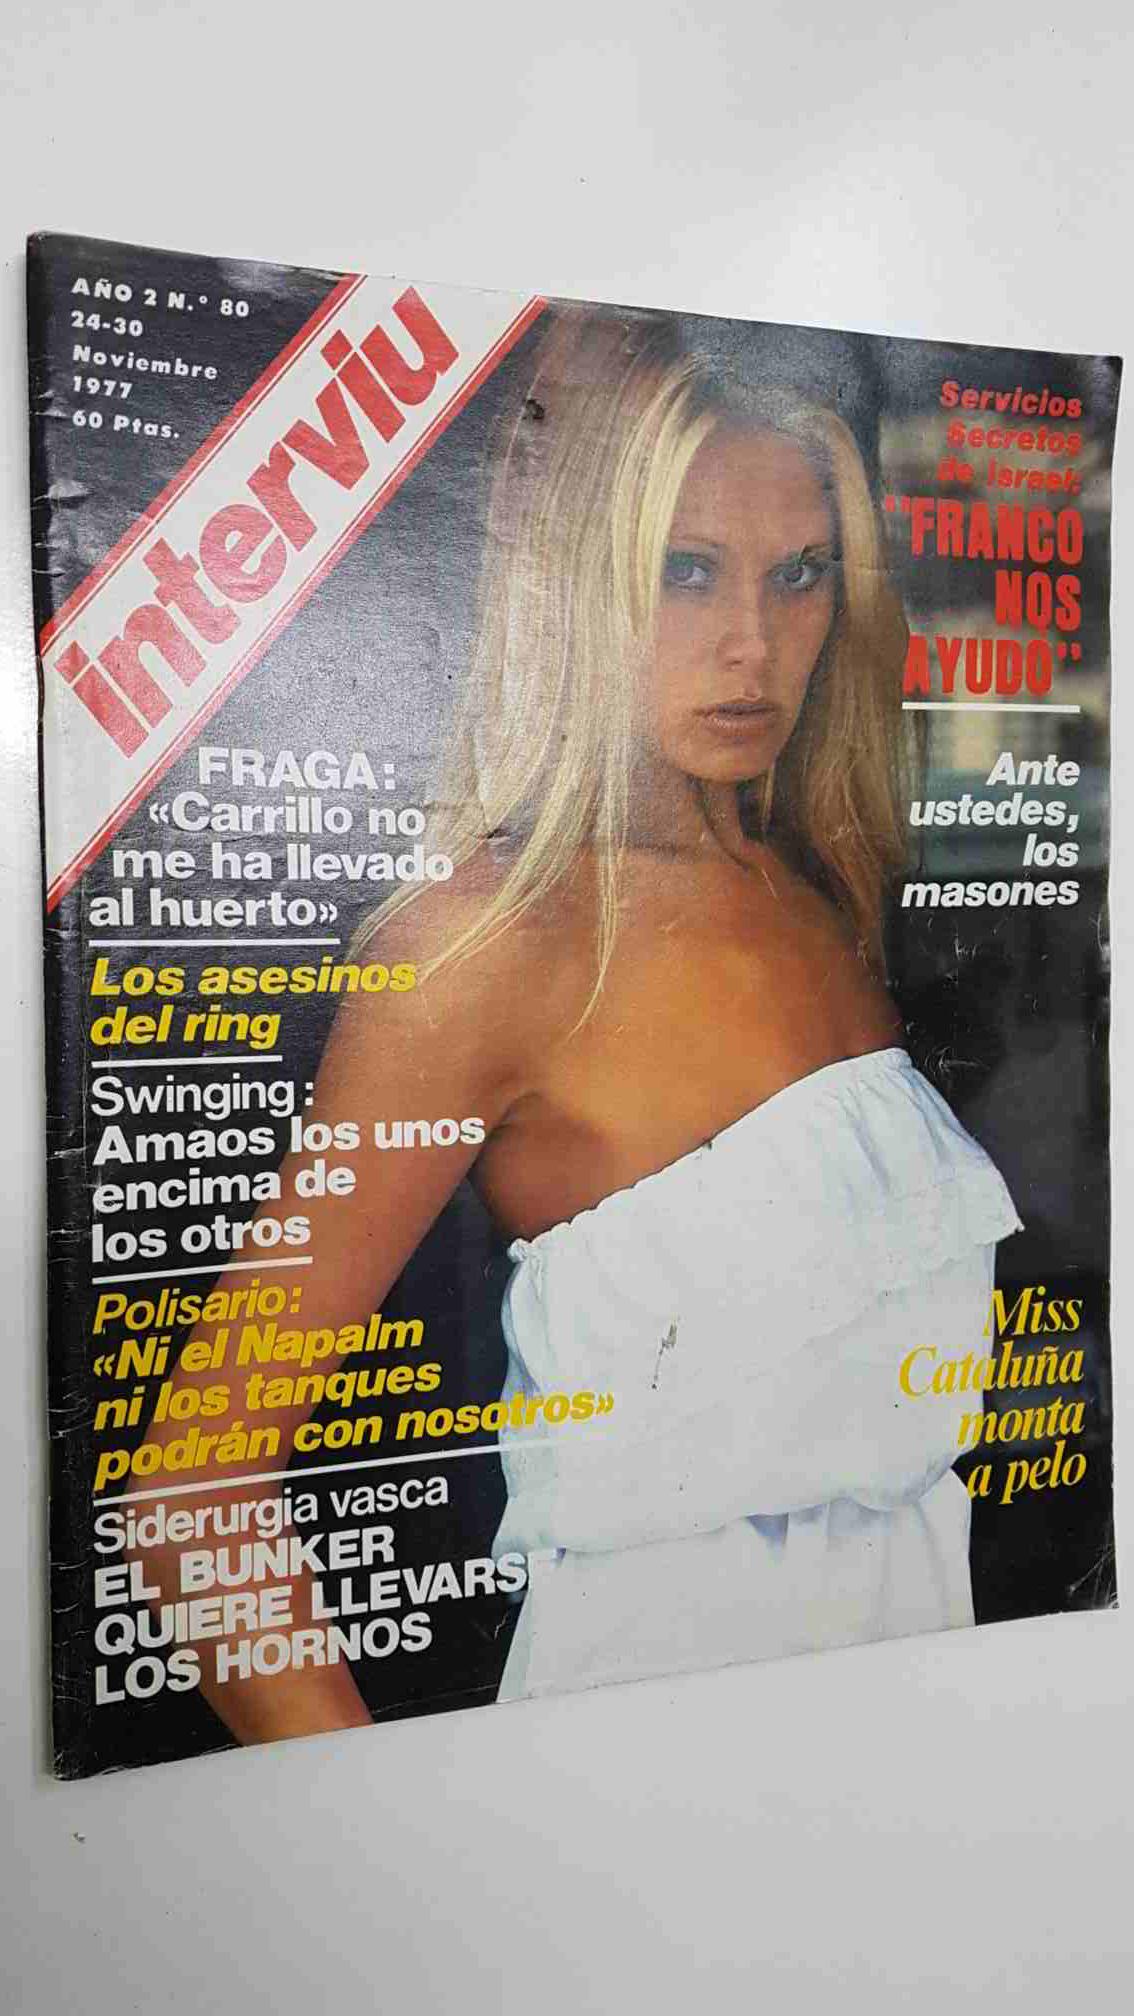 Revista Interviu: año 2 num 80 (24 11 77) Chica portada: Miou Miou.  Servicios secretos de Israel: Franco nos ayudo  | Libros y  Coleccionismo